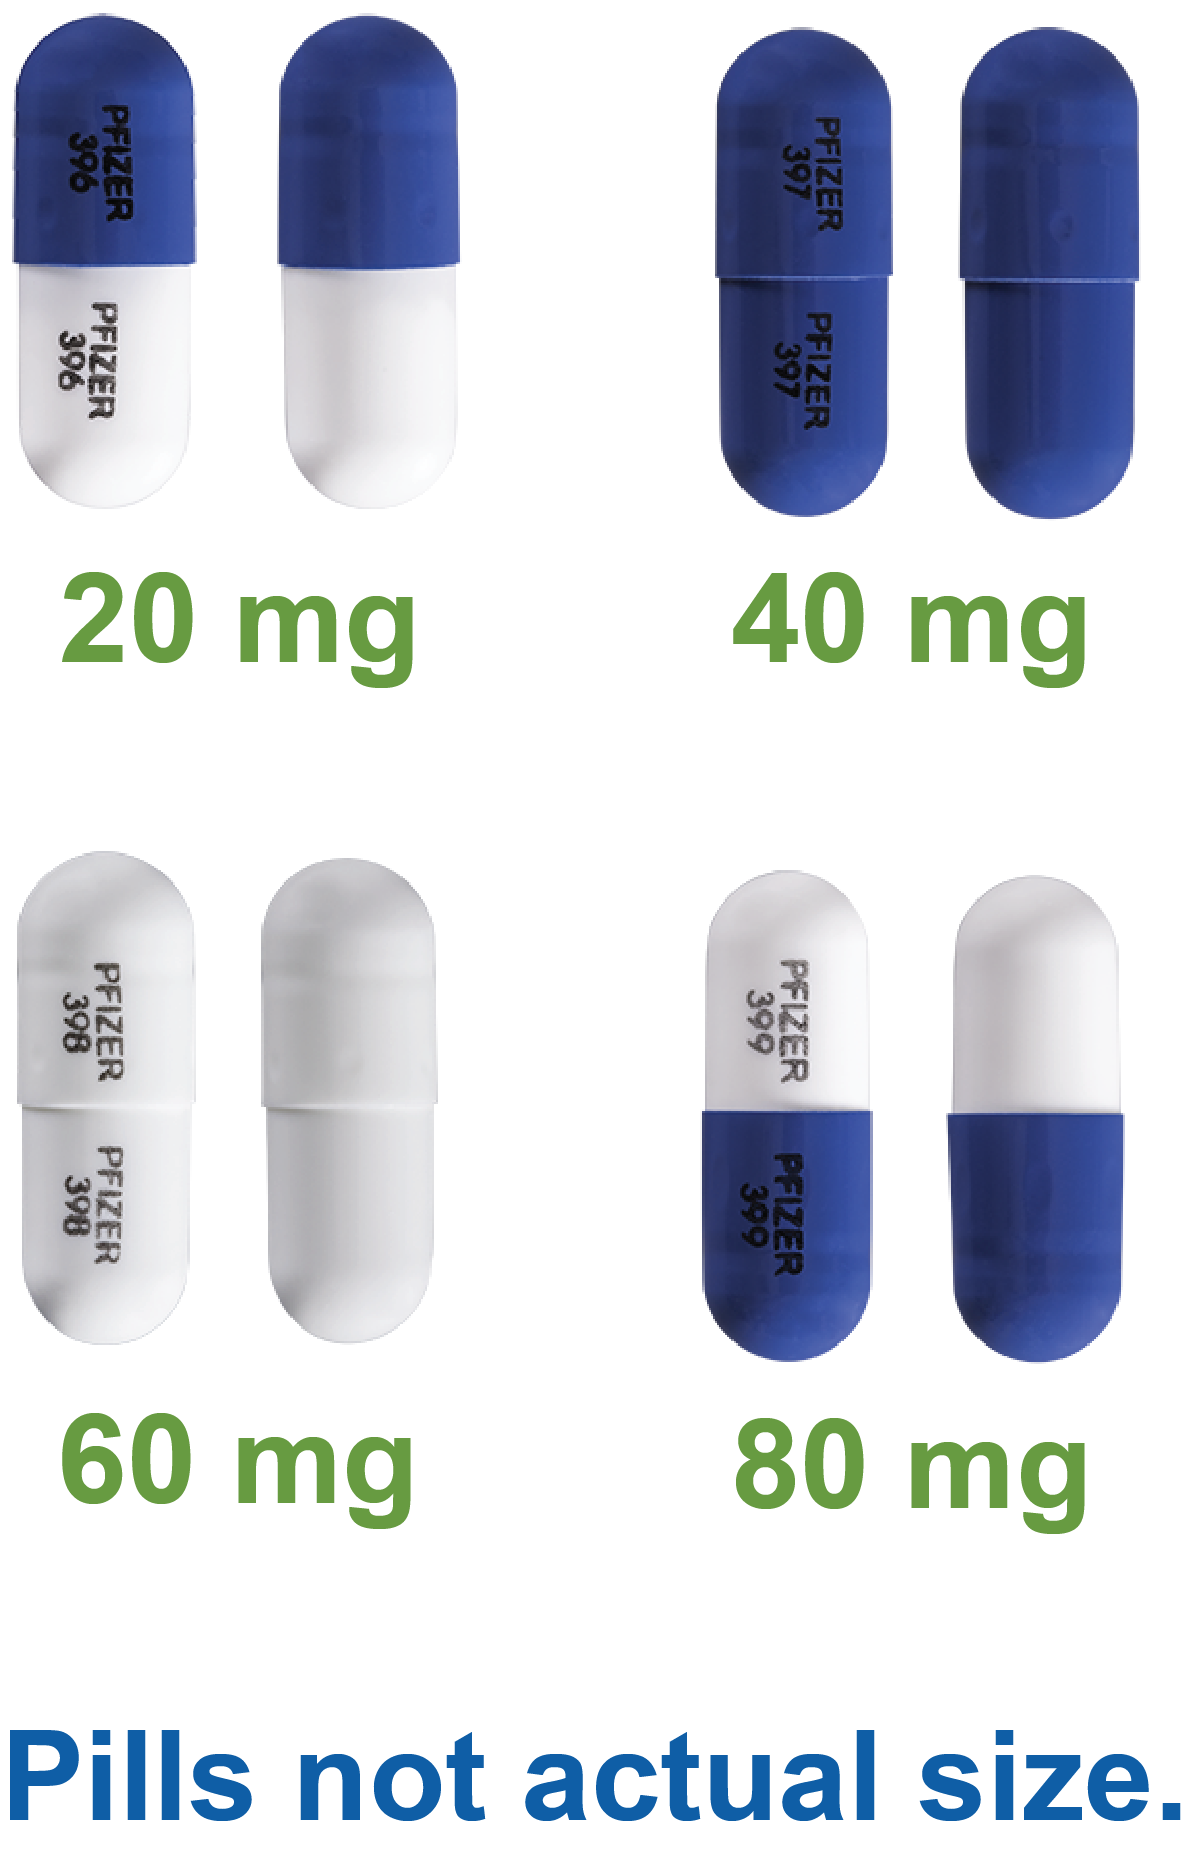 Images of 20 milligram, 40 milligram, 60 milligram and 80 milligram pills 